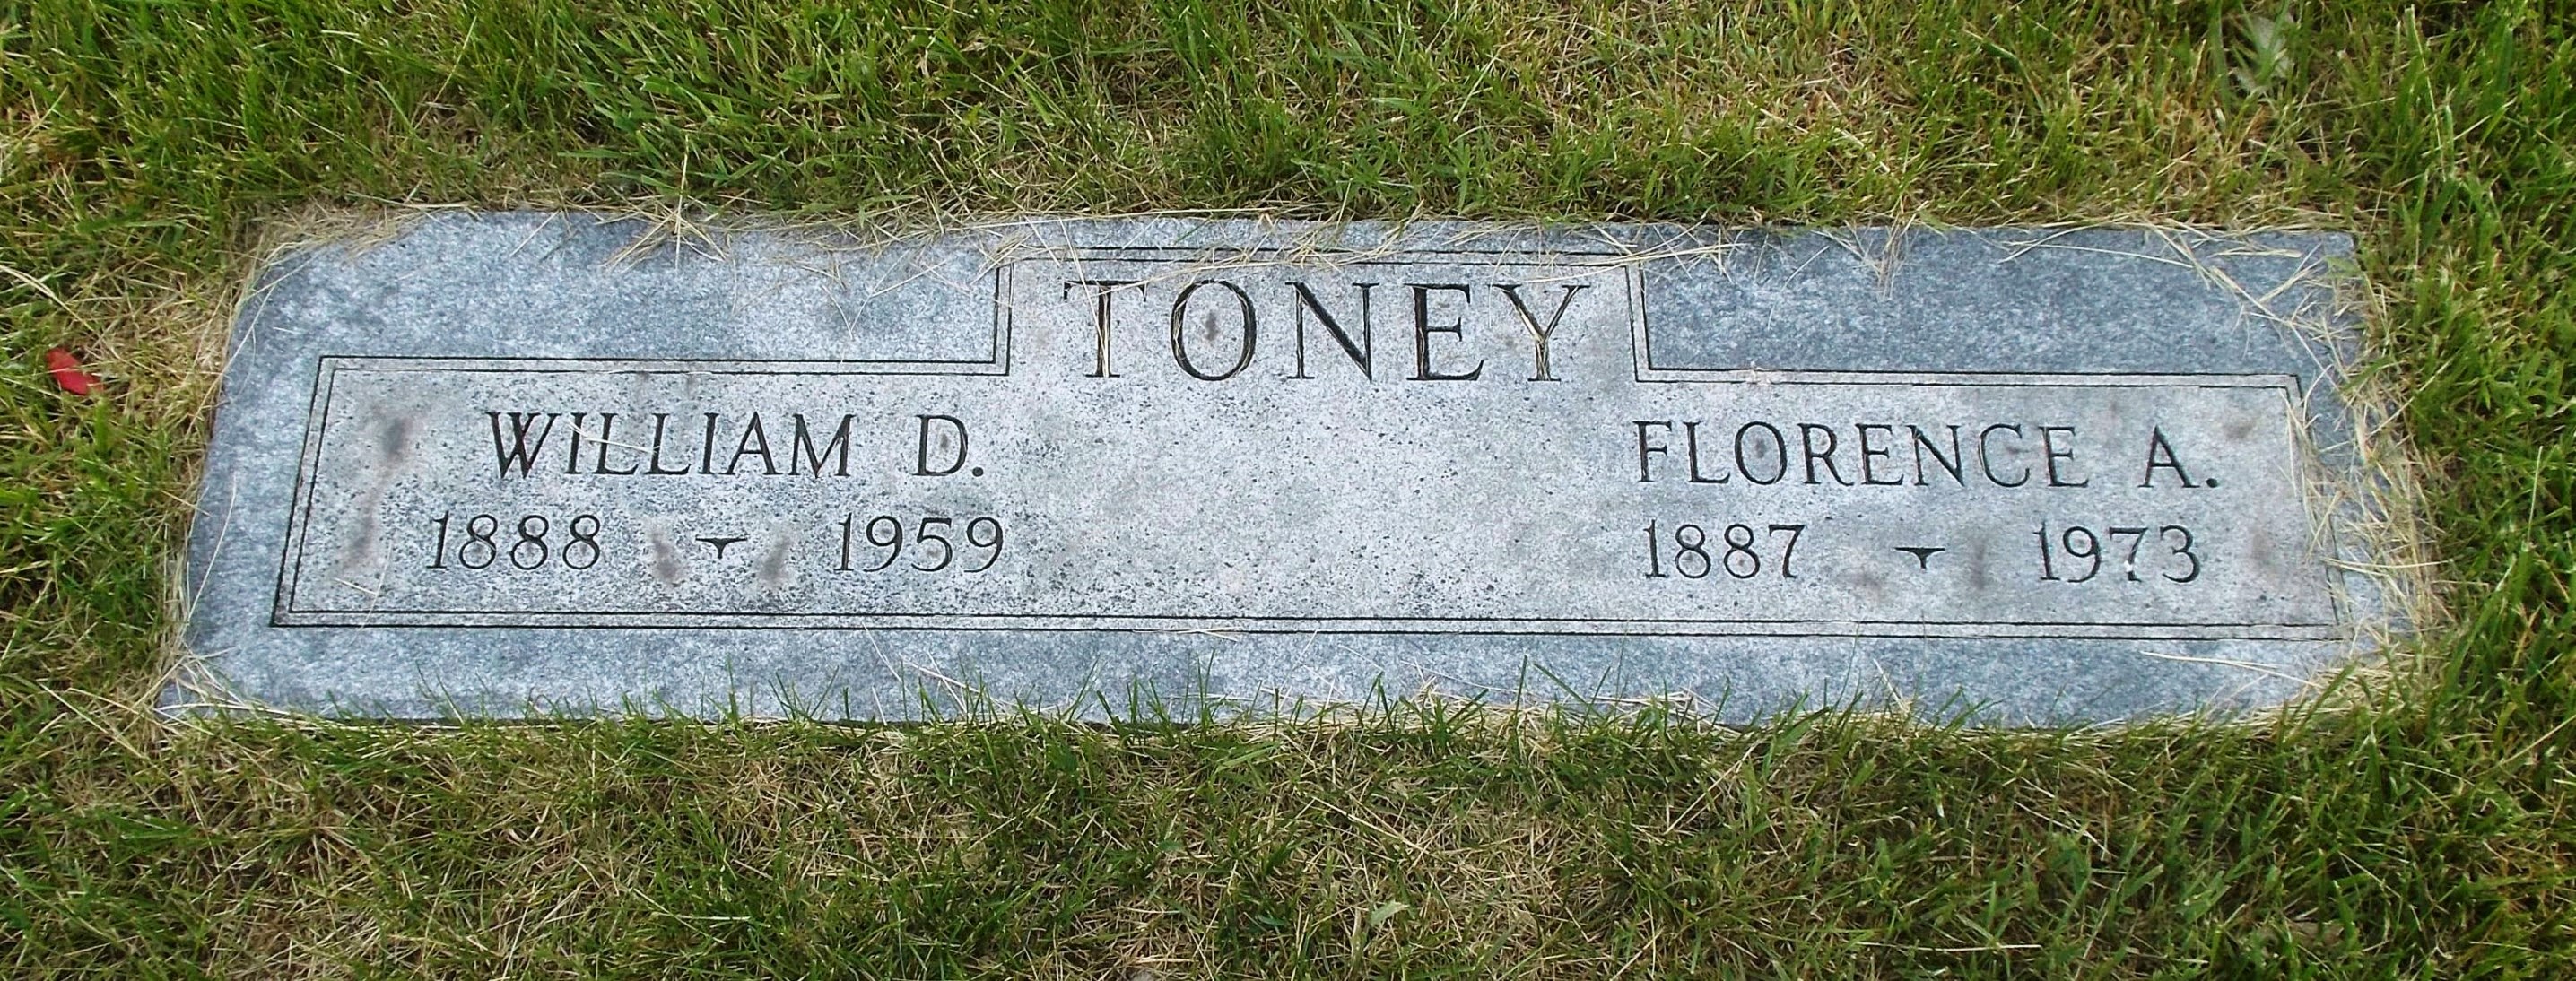 William D Toney